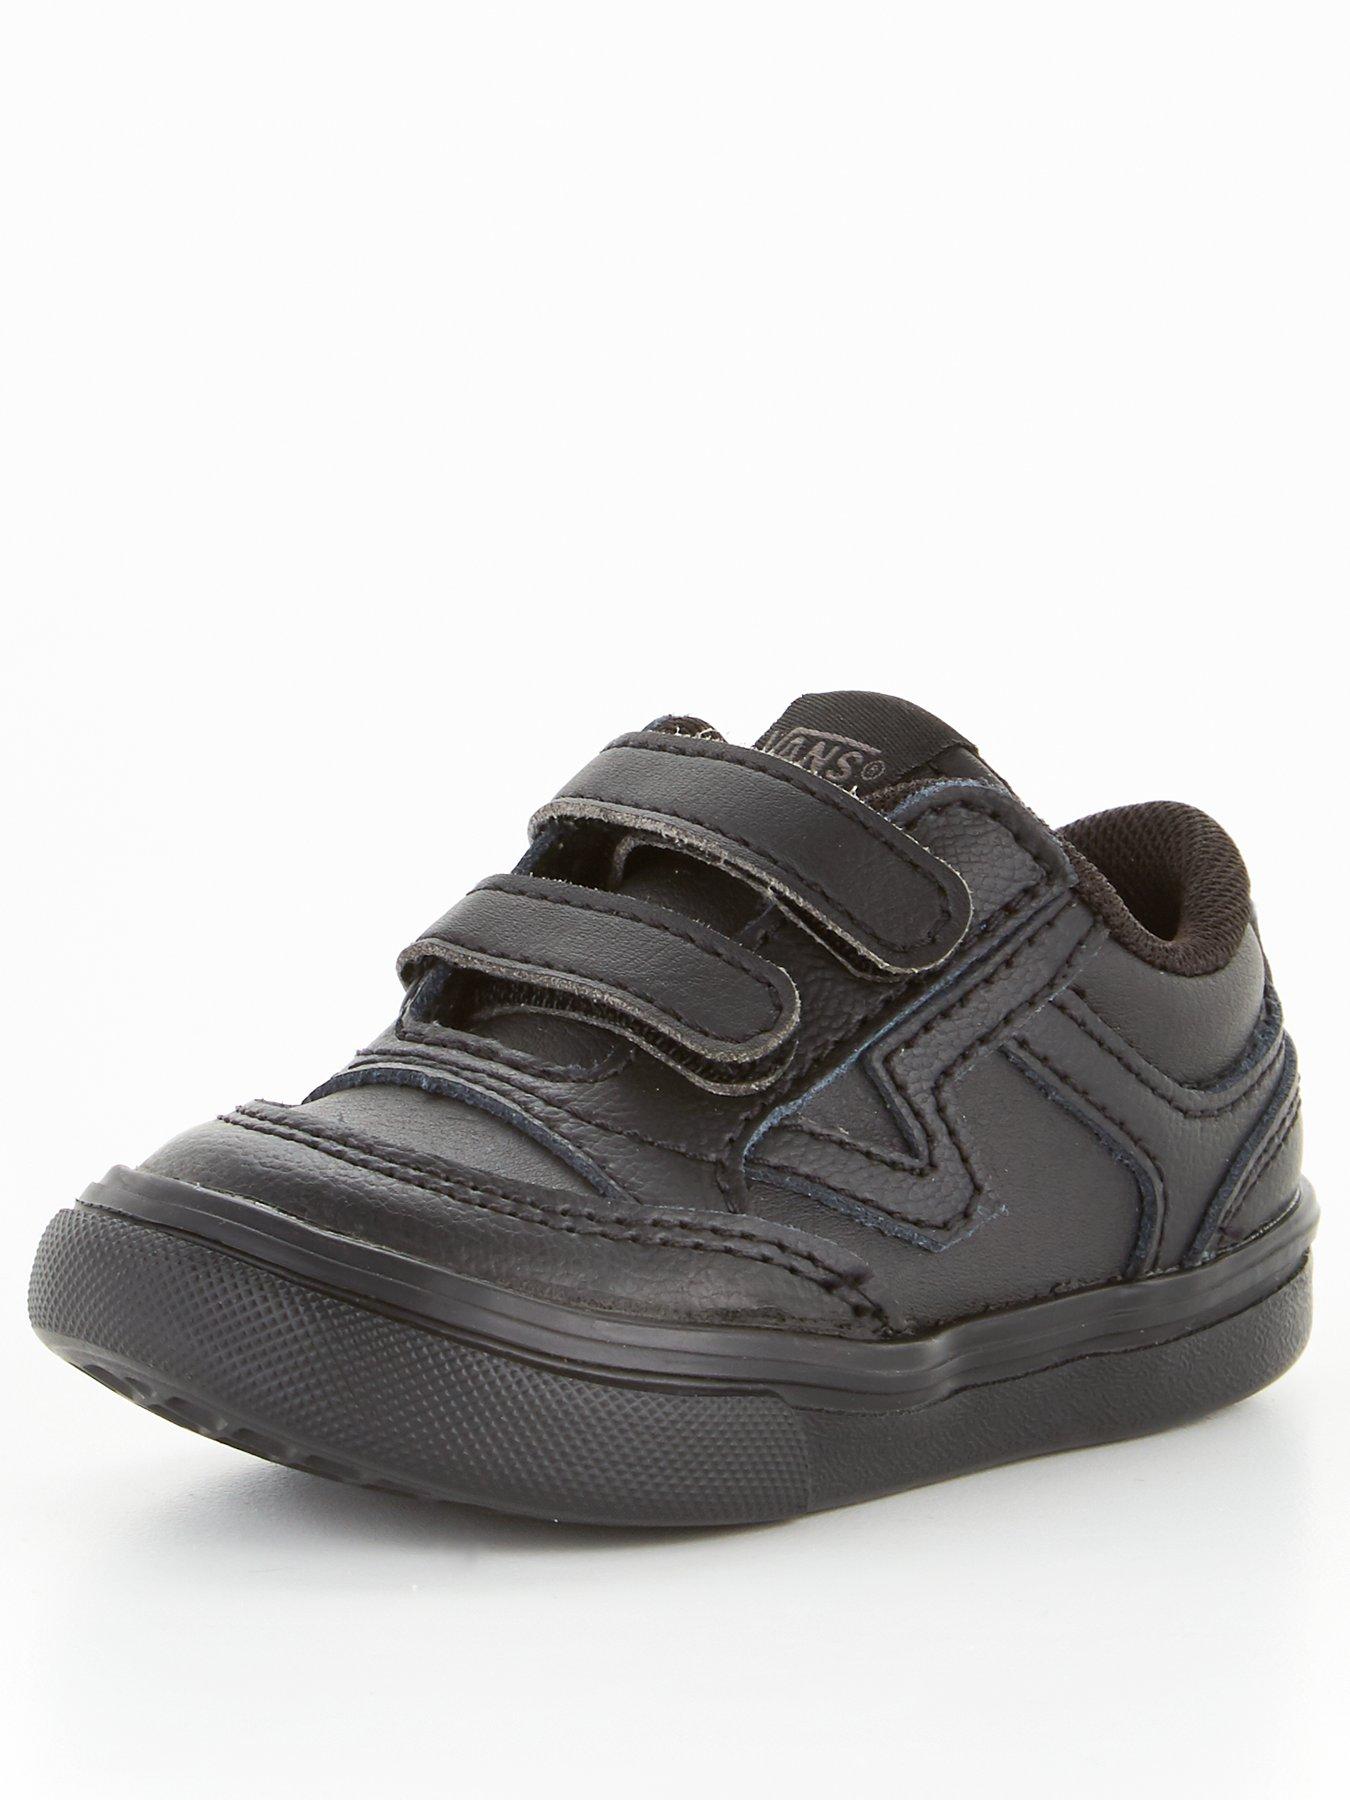 infant vans shoes sale